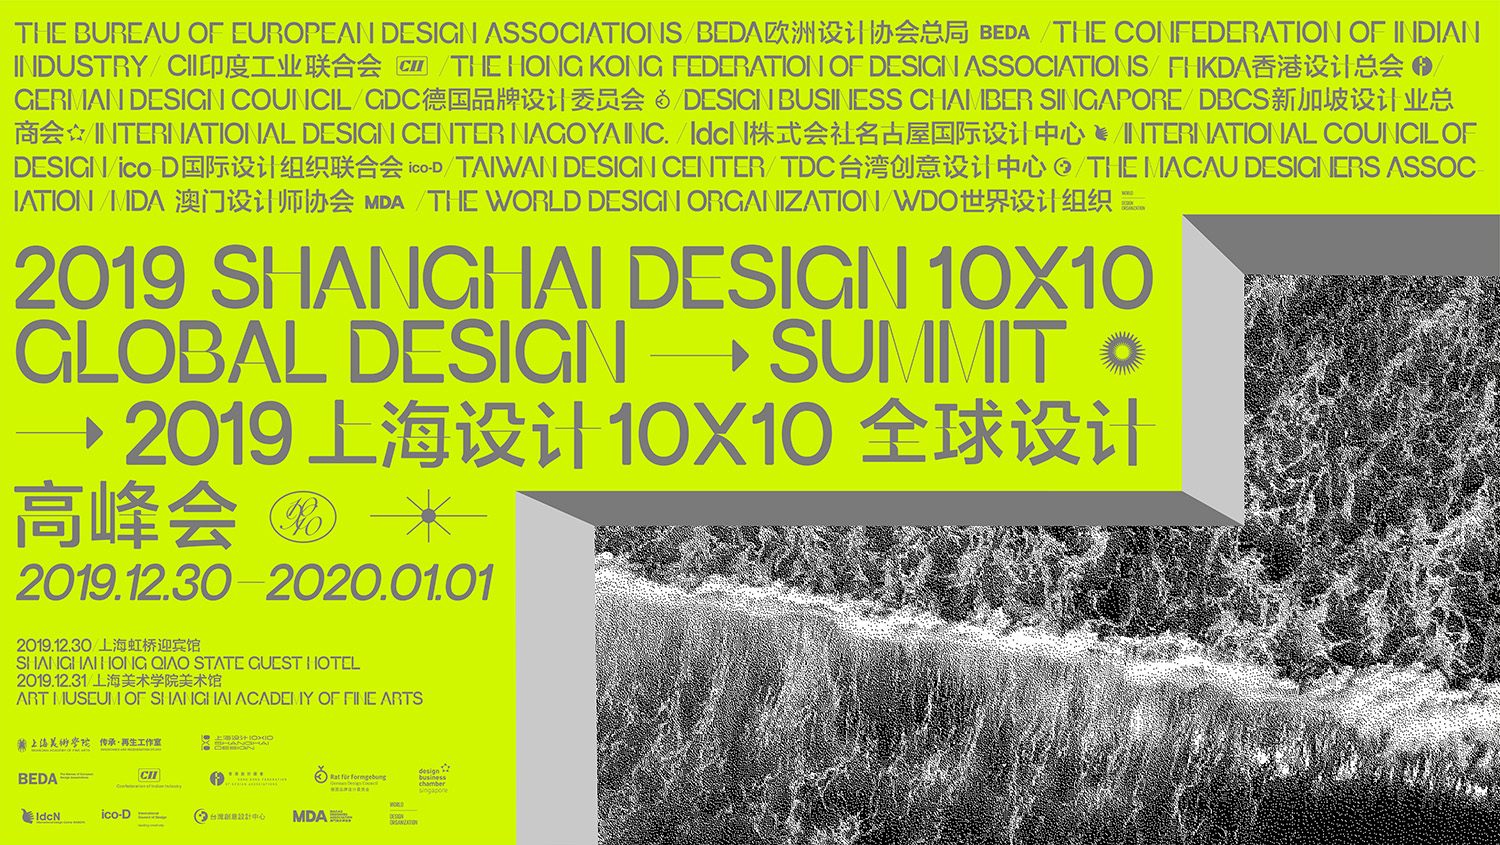 上海设计10×10 全球设计高峰会 会议第2场